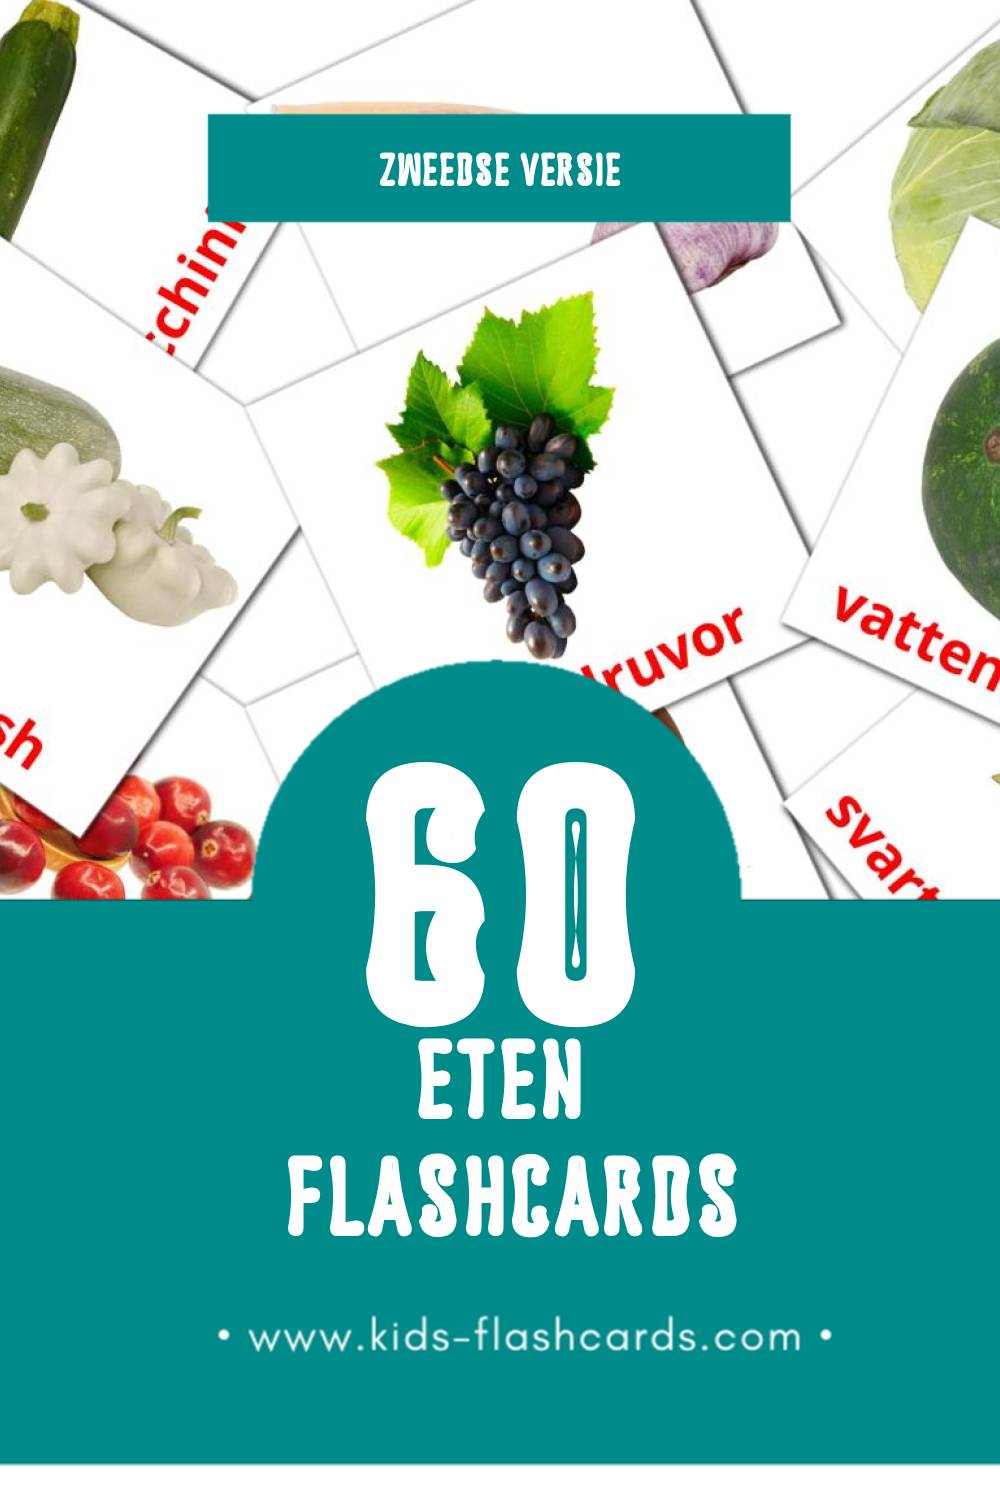 Visuele Mat Flashcards voor Kleuters (60 kaarten in het Zweeds)